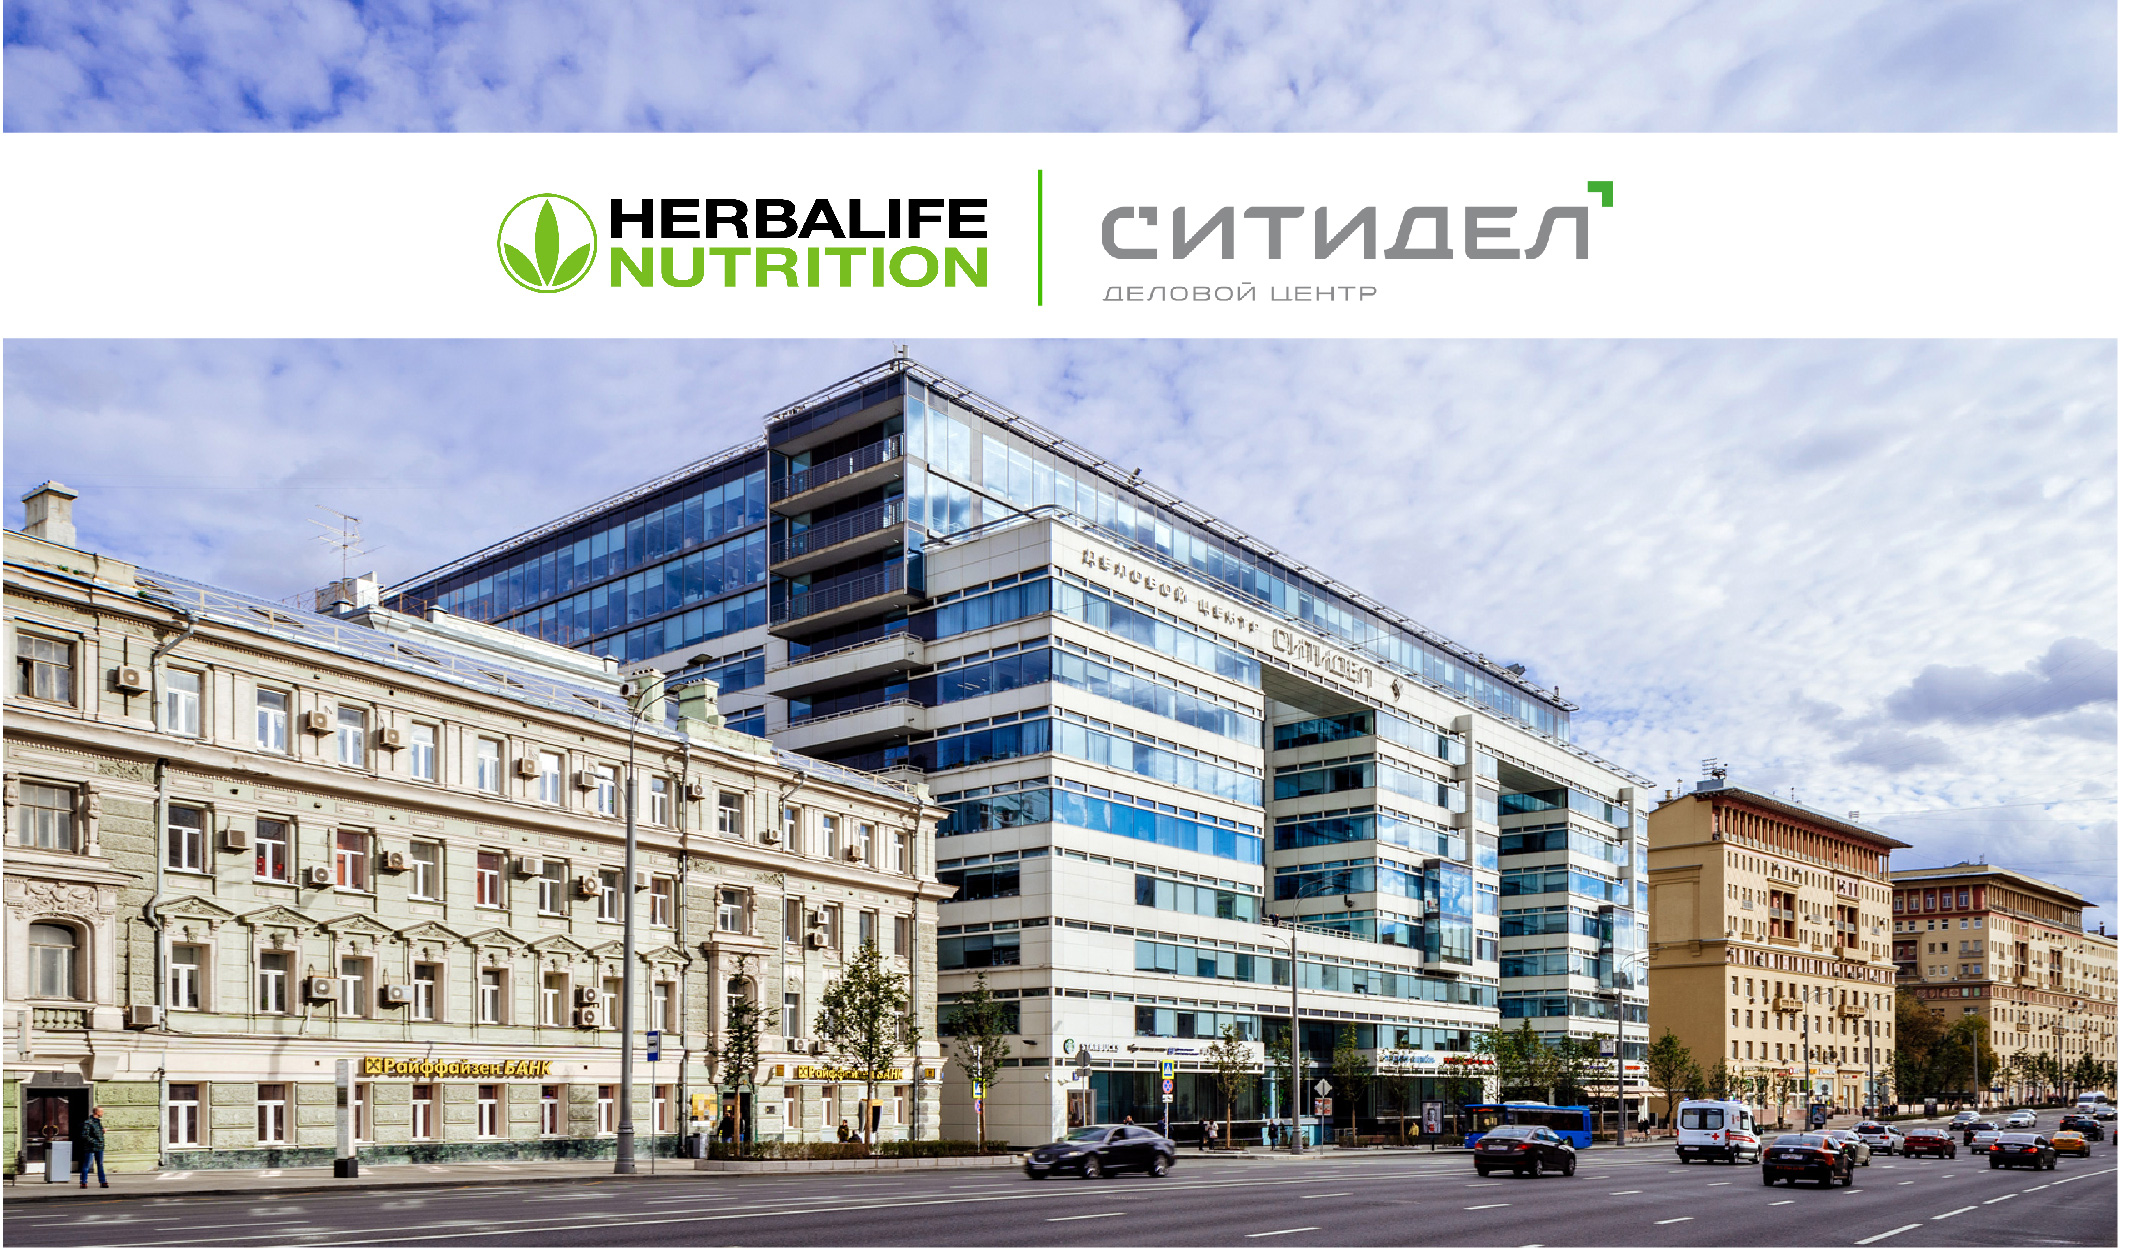 Herbalife Nutrition продлила договор аренды в ДЦ «СИТИДЕЛ»